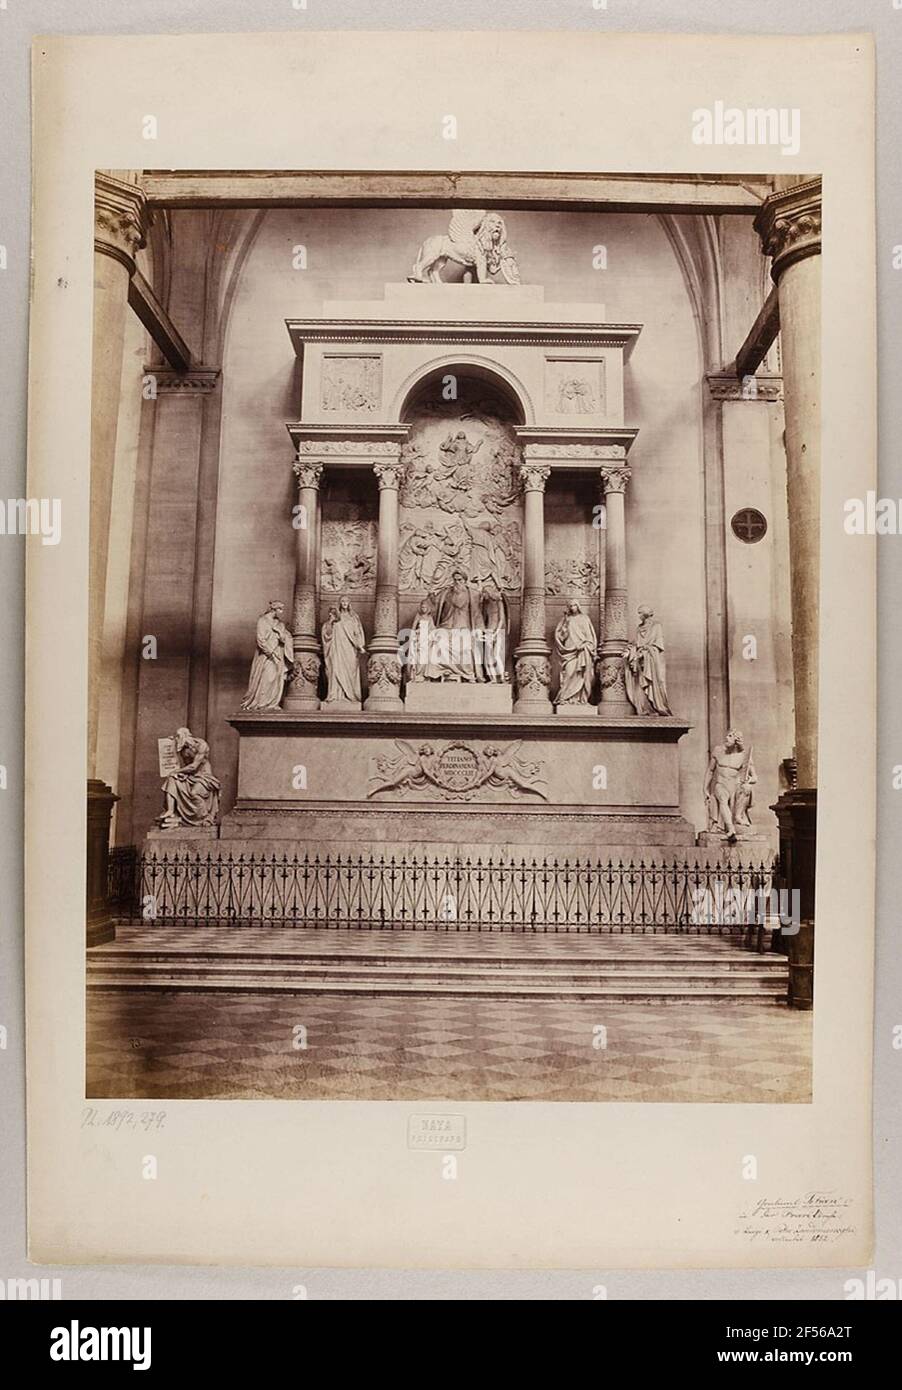 Venise - monument de Titien dans l'église du Frari de Zandomeneghi. Geschenk von Dr. Jutus Brinckmann, Hambourg, 1892 Banque D'Images